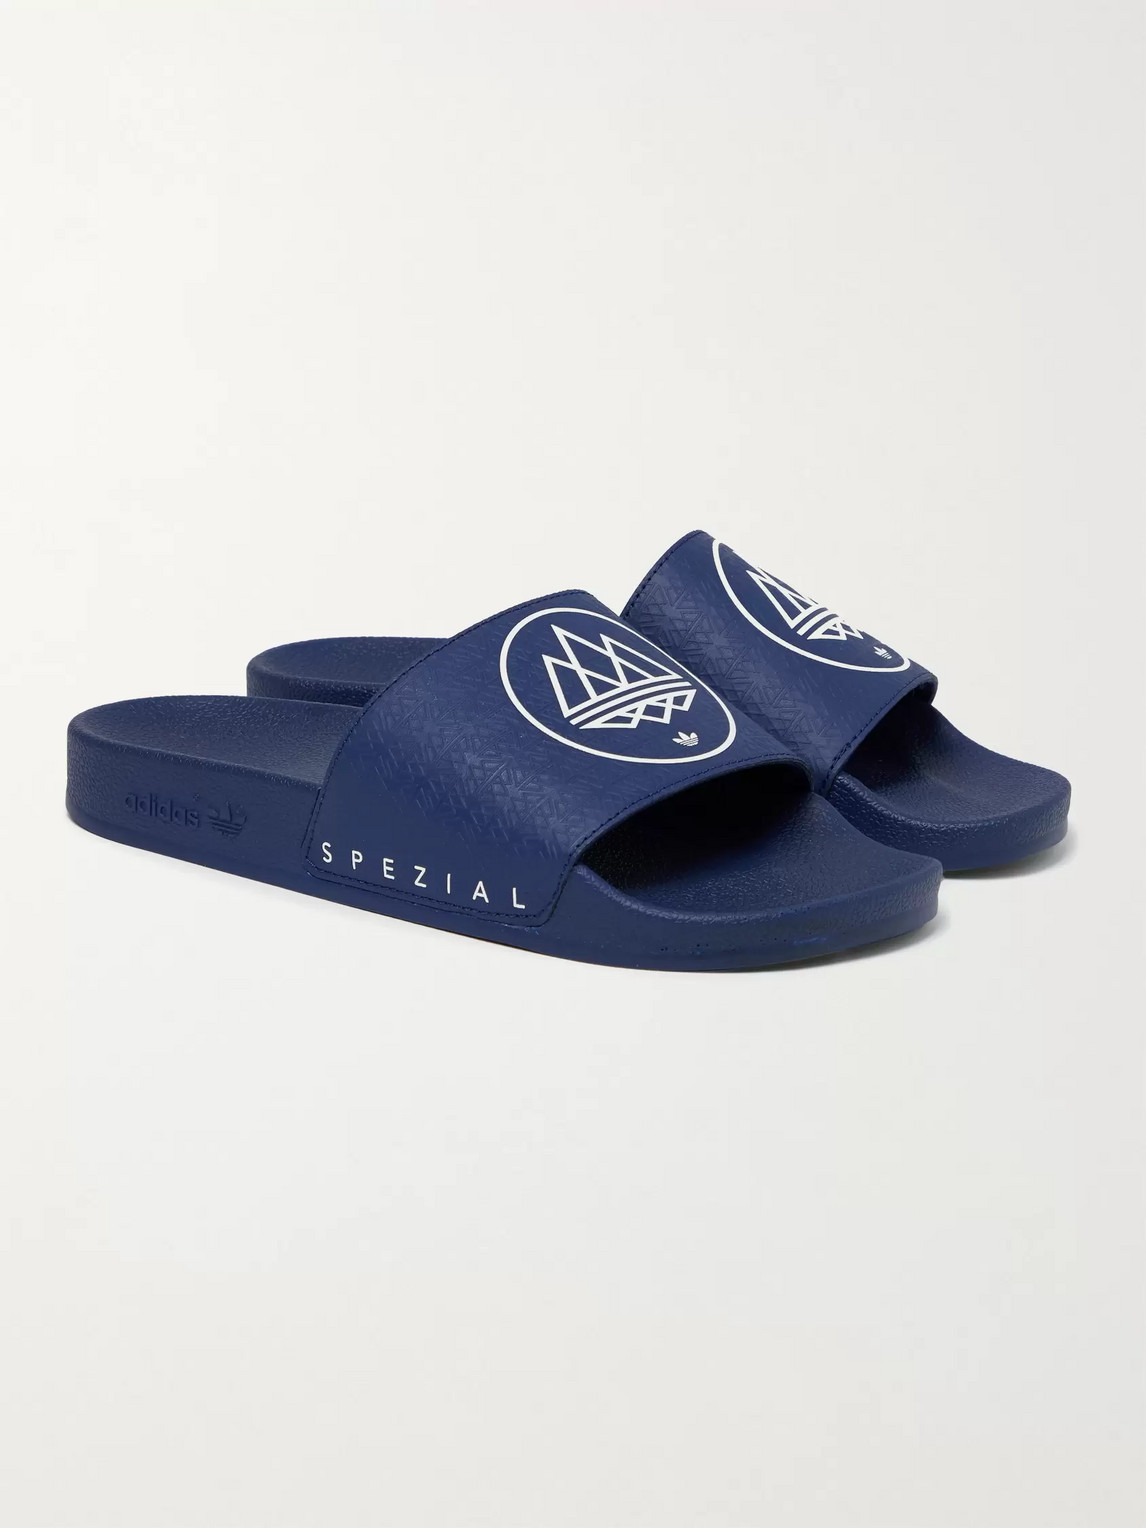 Adidas Consortium Spezial Adilette Printed Rubber Slides In Blue